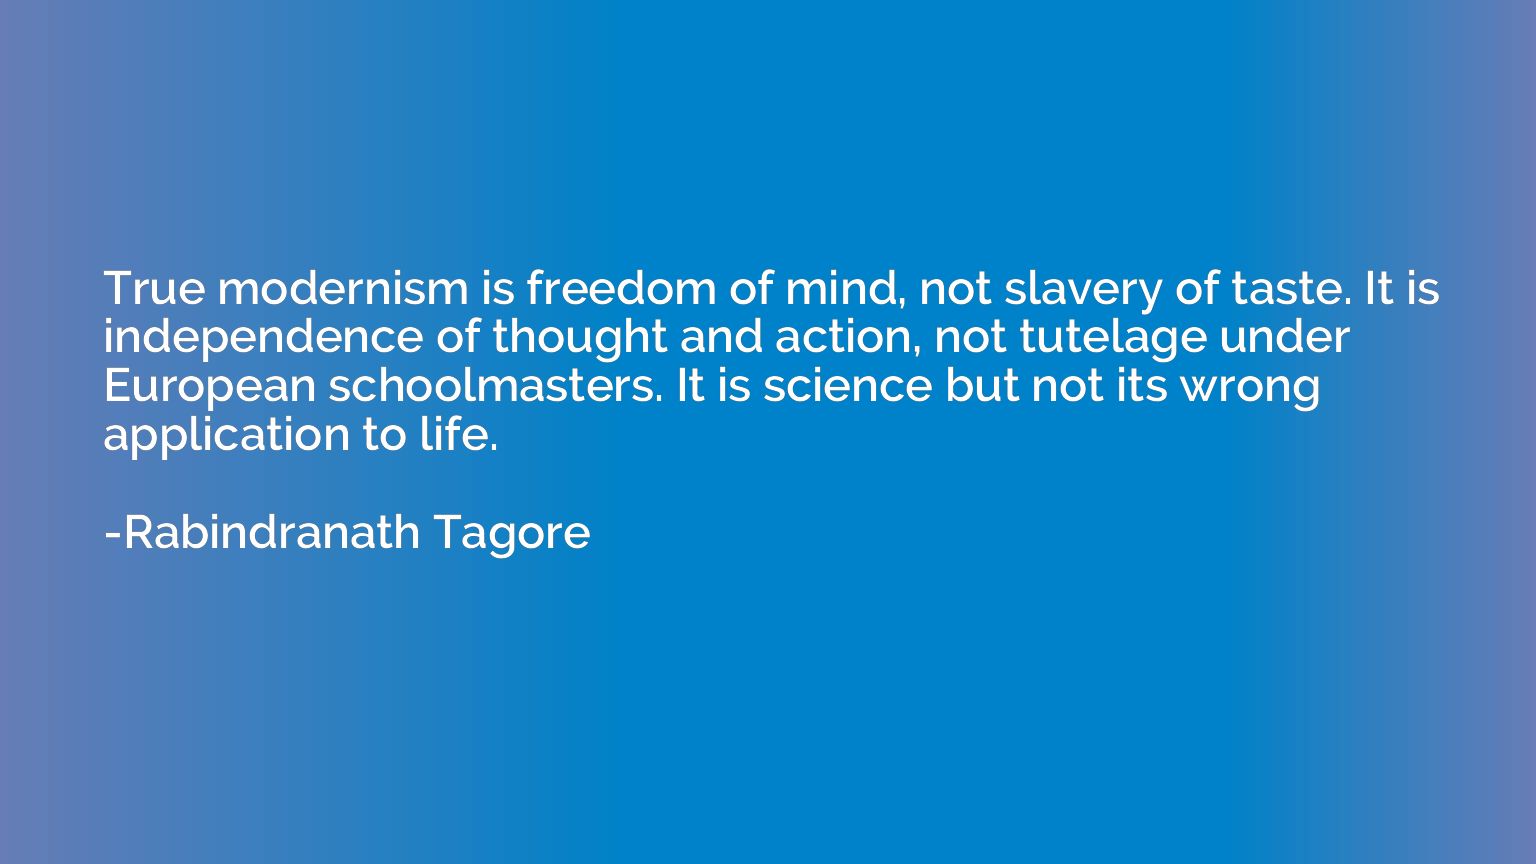 True modernism is freedom of mind, not slavery of taste. It 